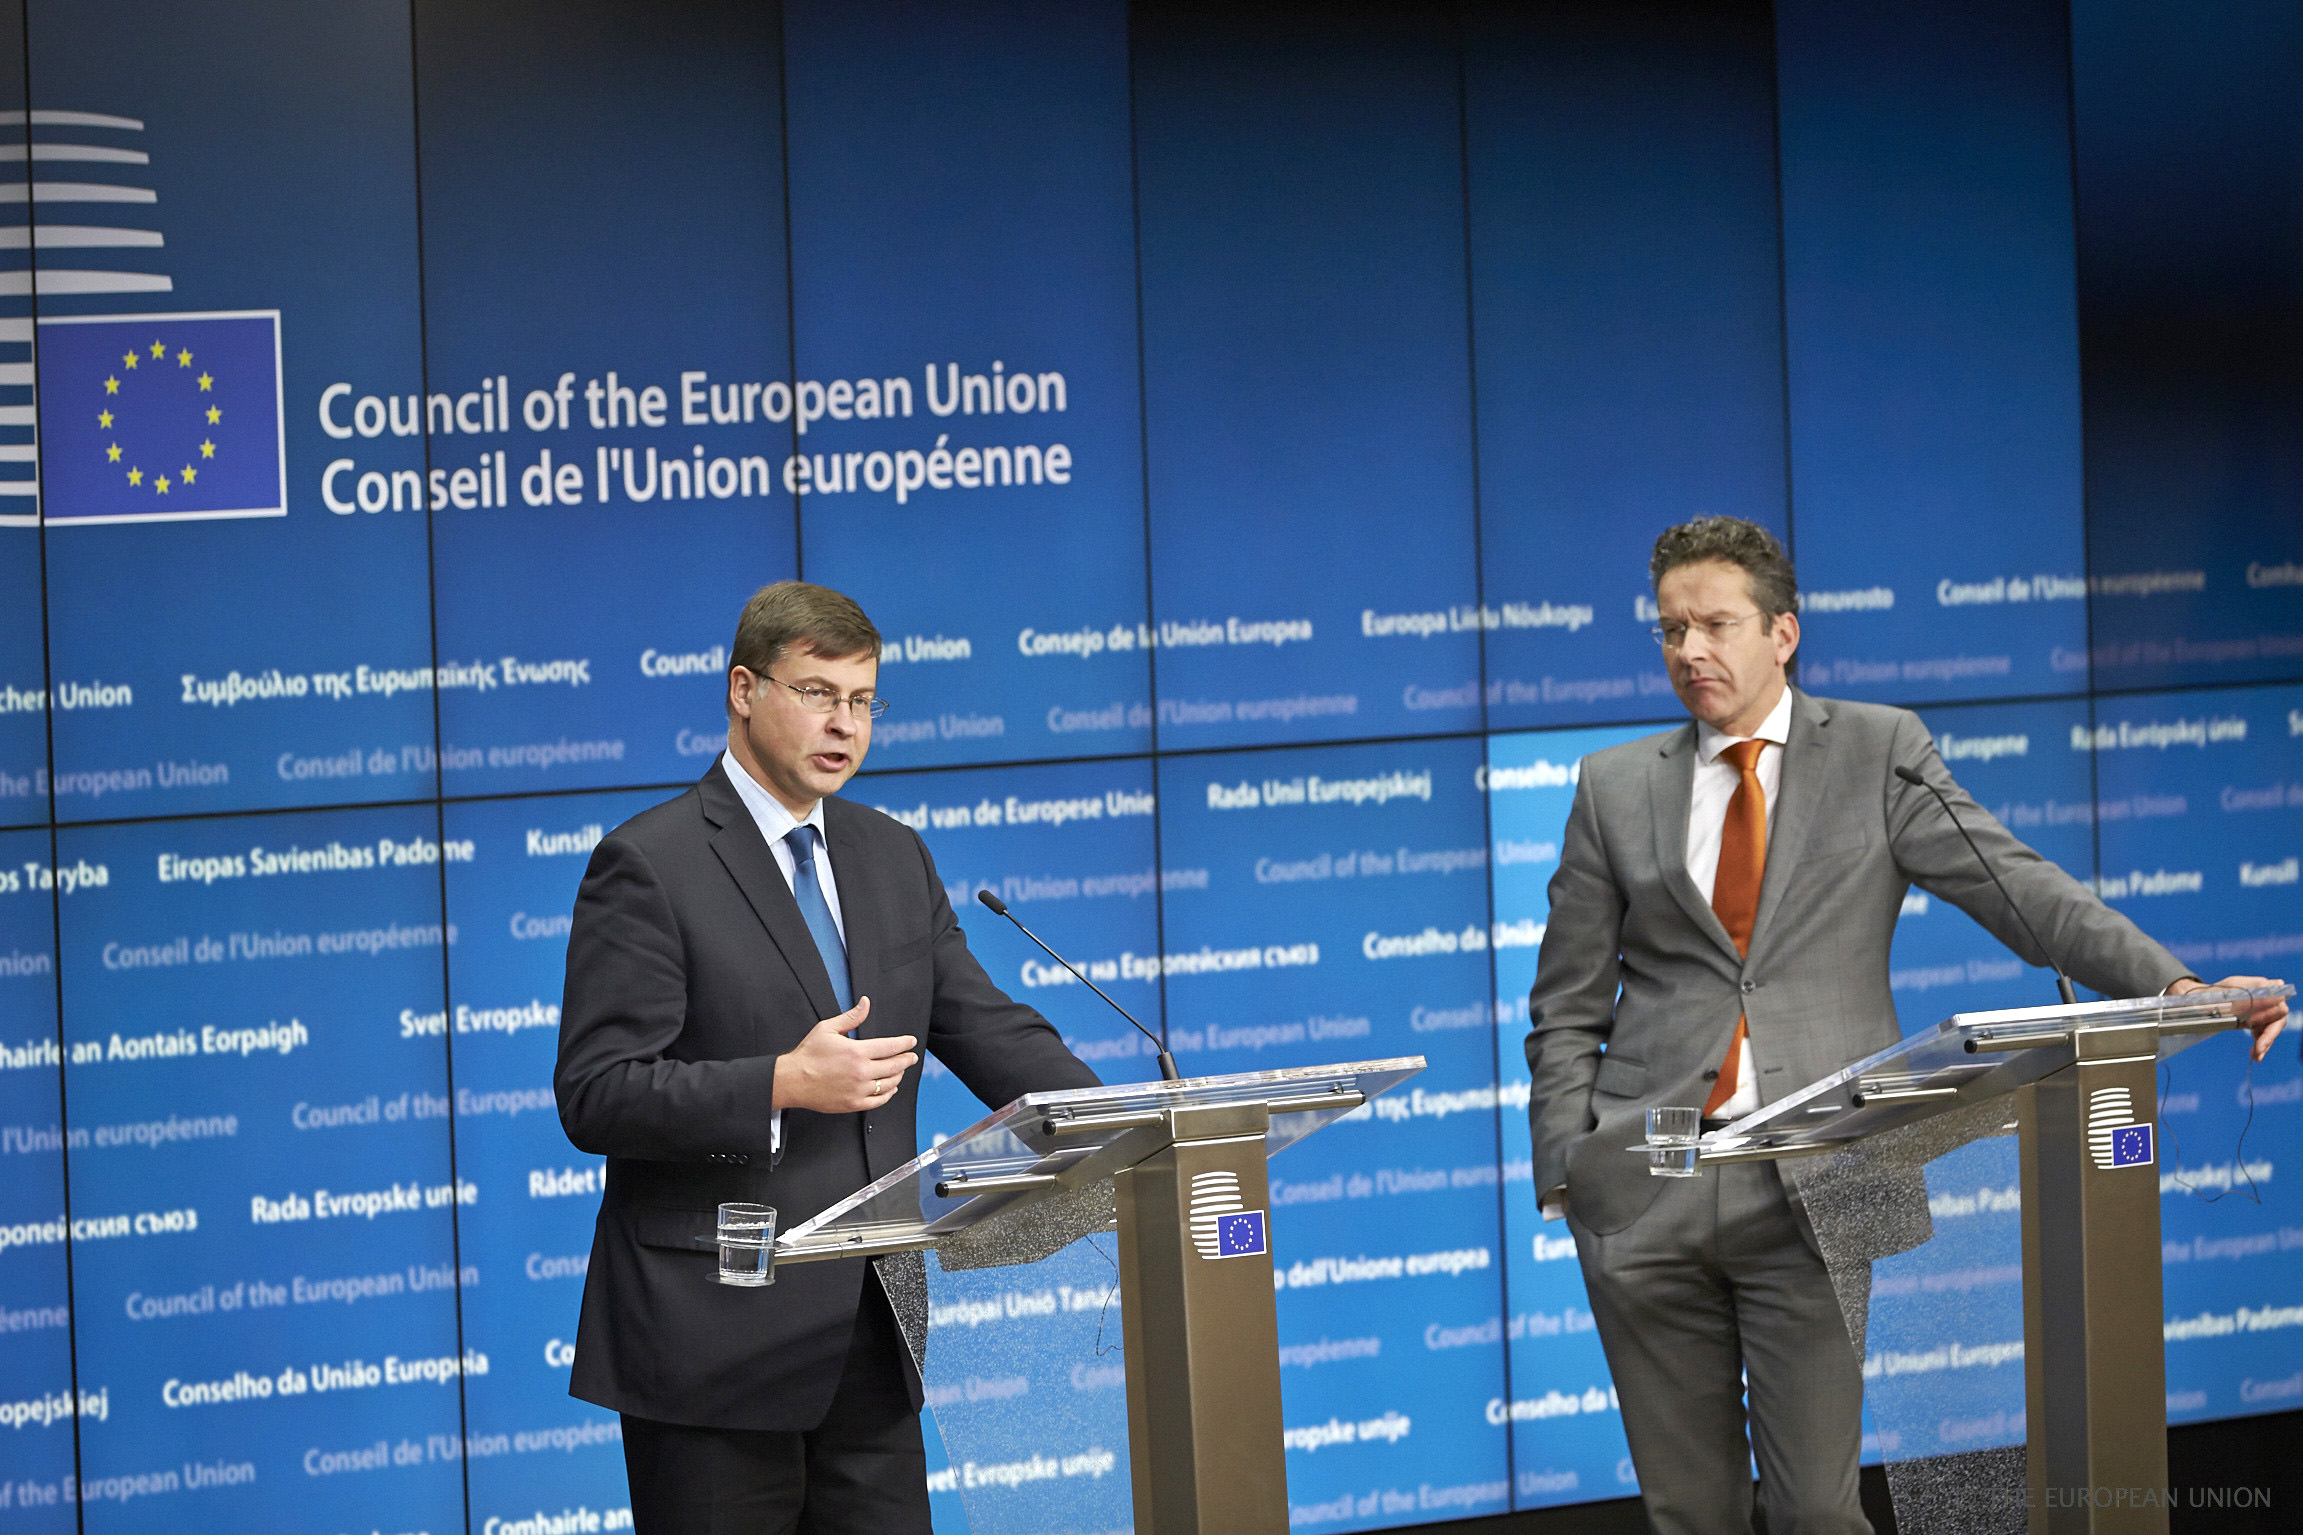 وزير المالية الهولندي يروين ديسليبلوم مع نائب رئيس المفوضية الاوروبية فالديز دومبروفسكيس خلال المؤتمر الصحفي